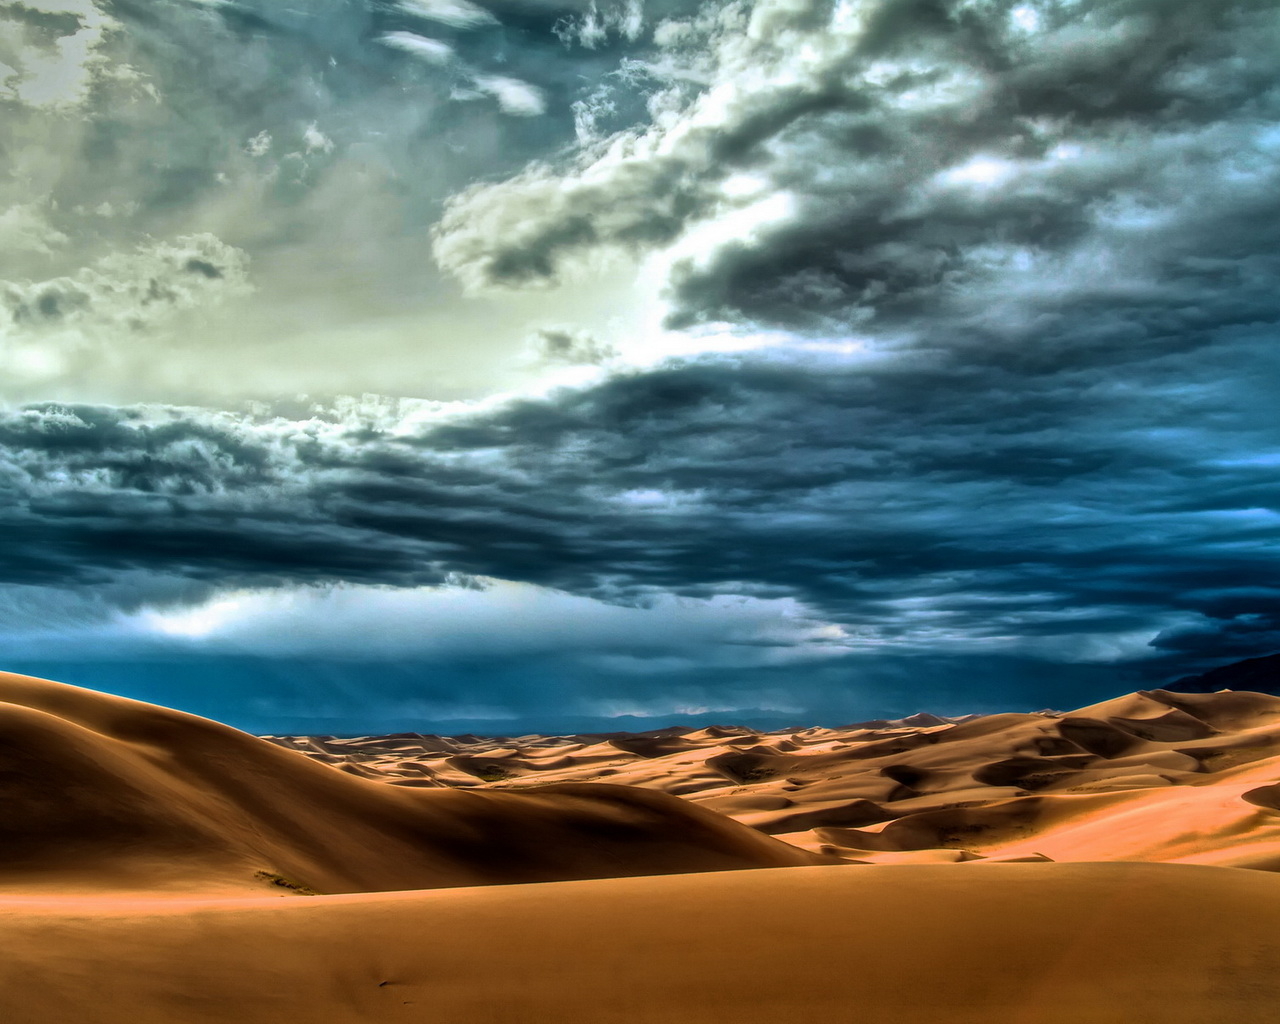 Desert Sands